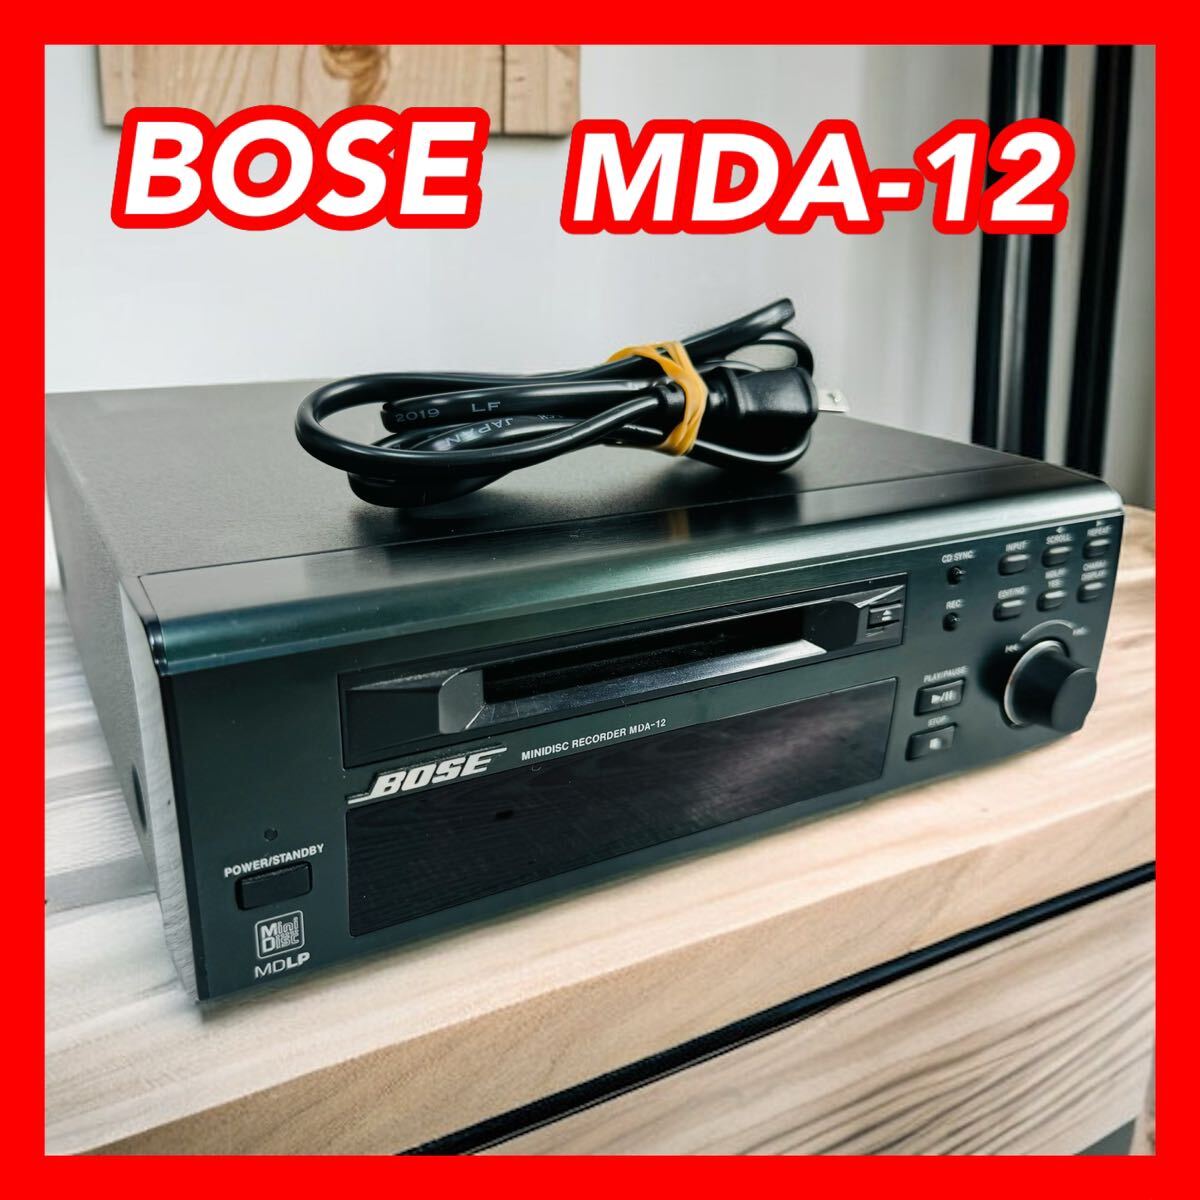 BOSE Bose MDA-12 MD плеер 